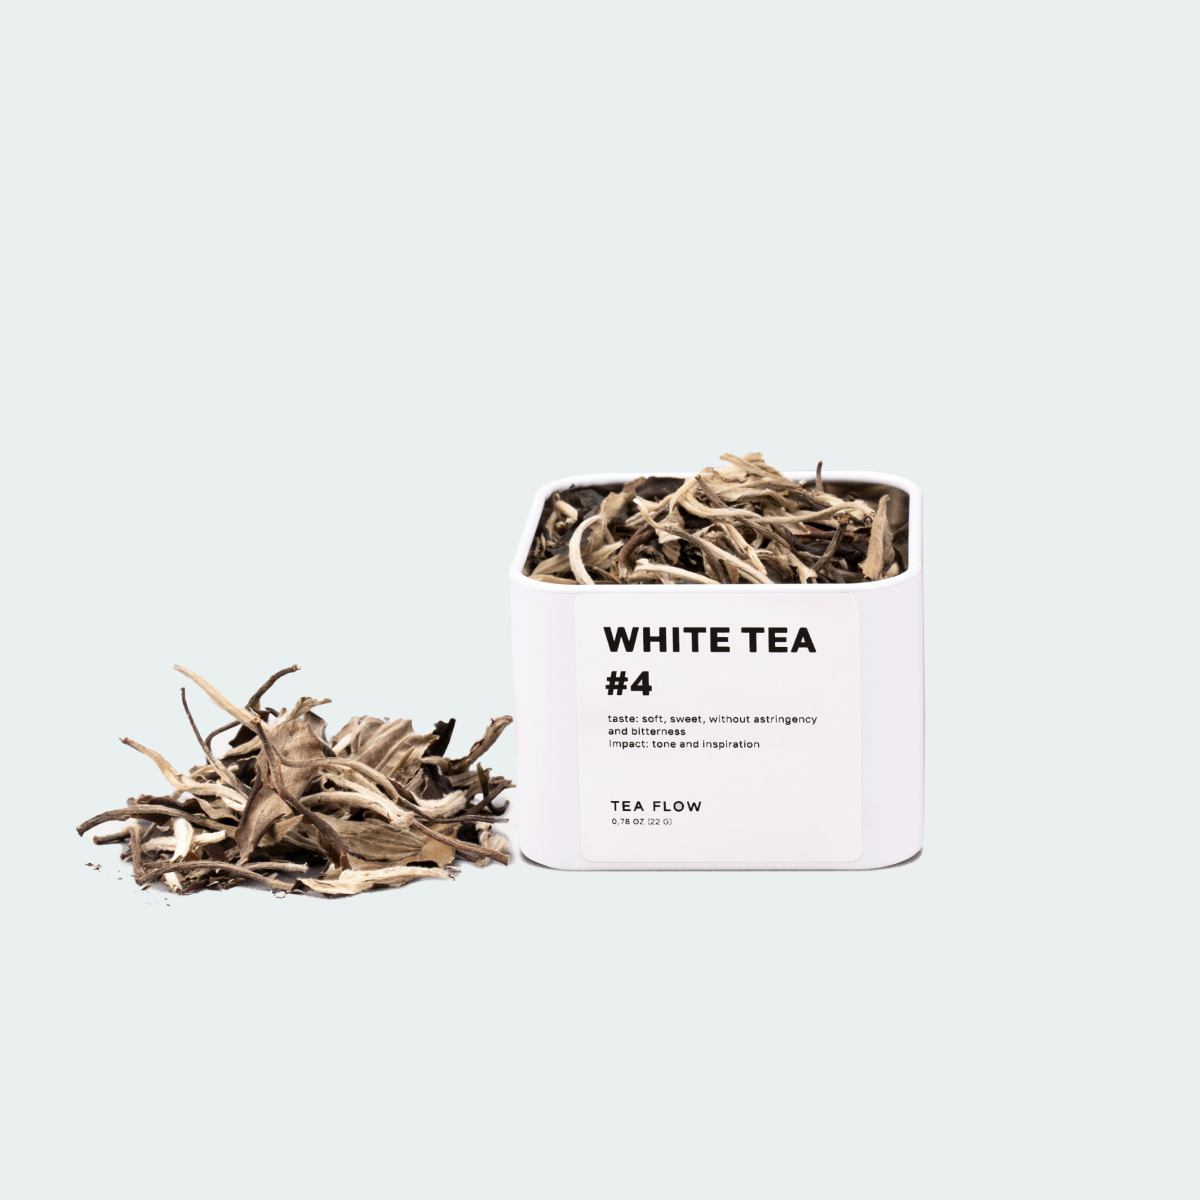 WHITE TEA #4